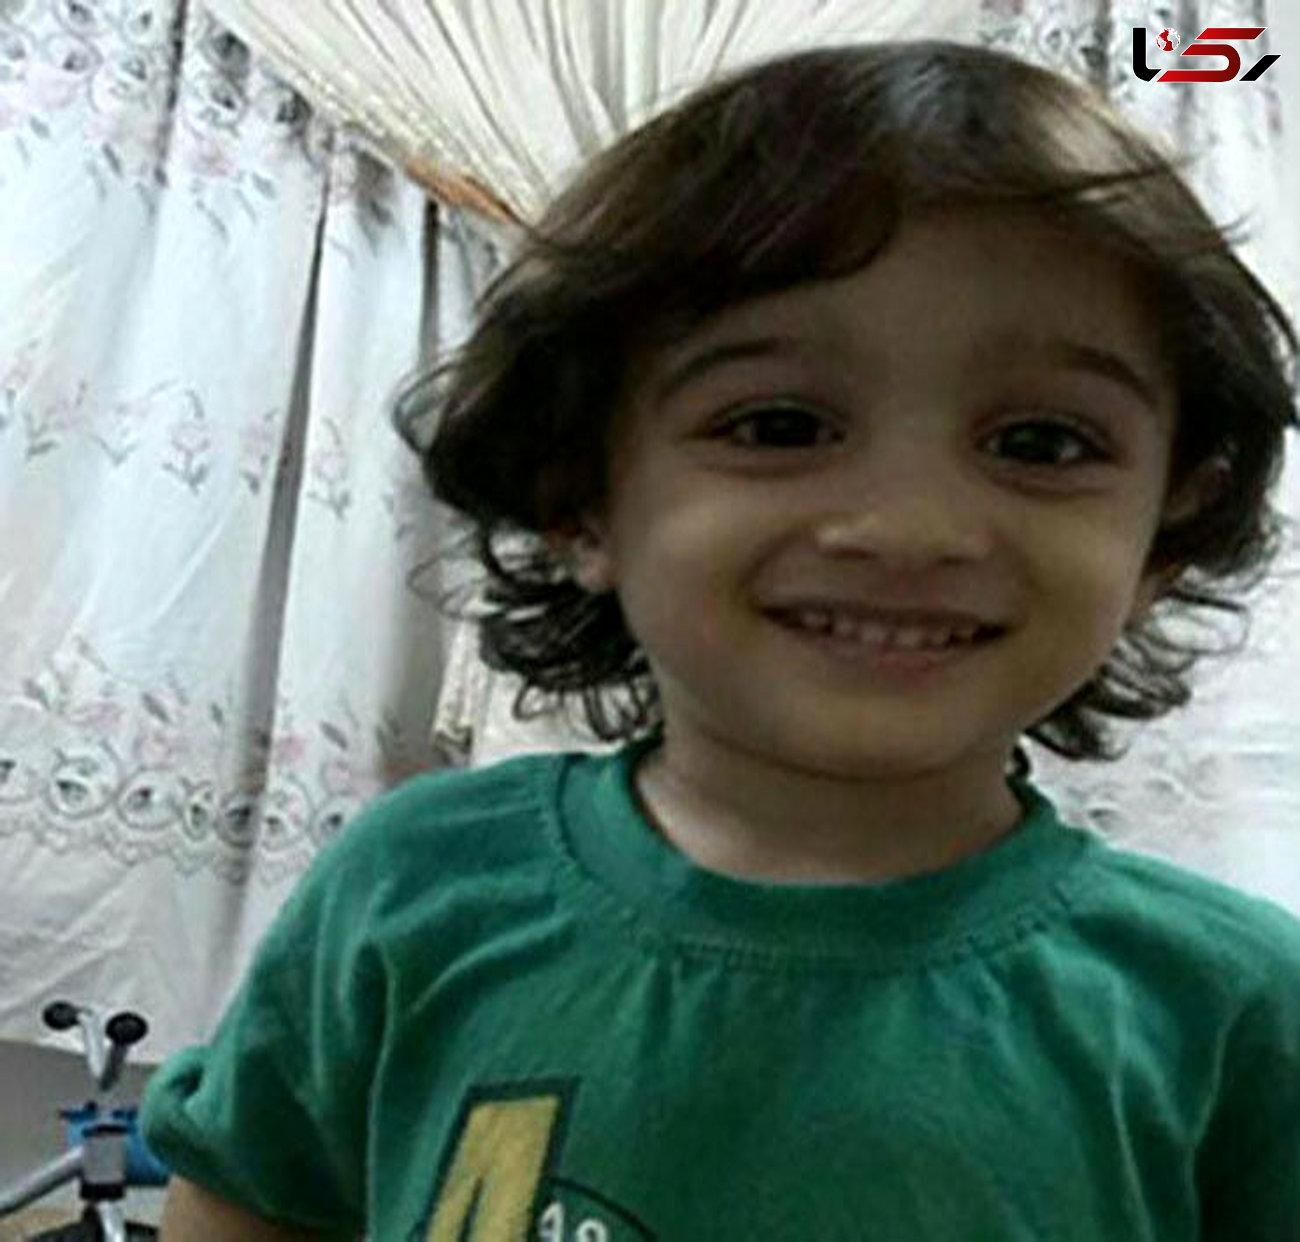 امیر ماهان 3 ساله گمشده است / اگر این کودک را دیده اید با پلیس نور تماس بگیرید + عکس